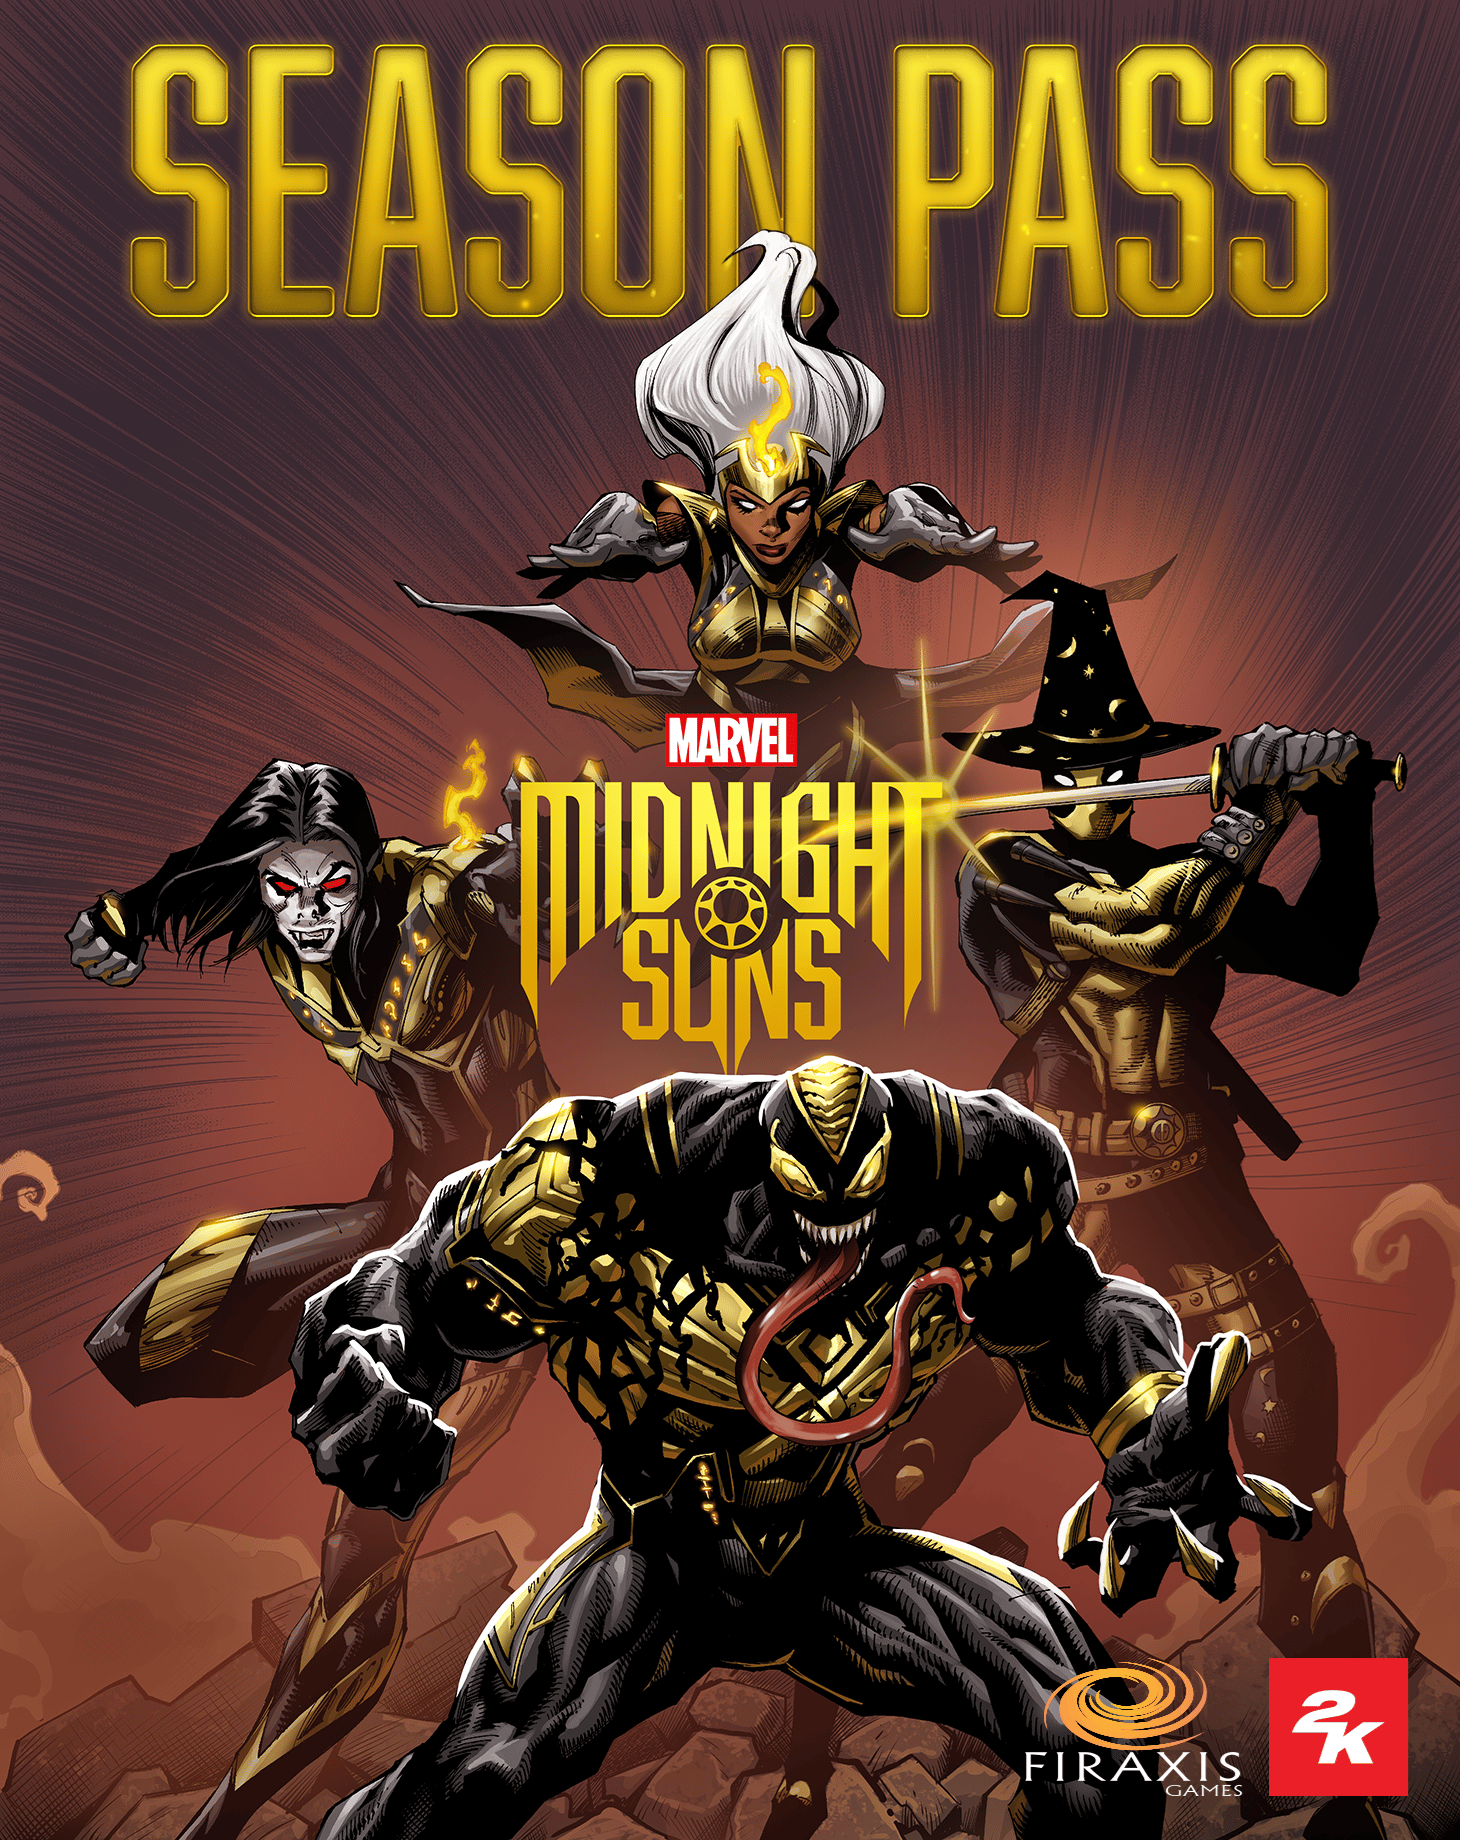 Marvel's Midnight Suns Season Pass | ROW (93269f4a-a2d1-4ed4-8d87-8c03579cba89)